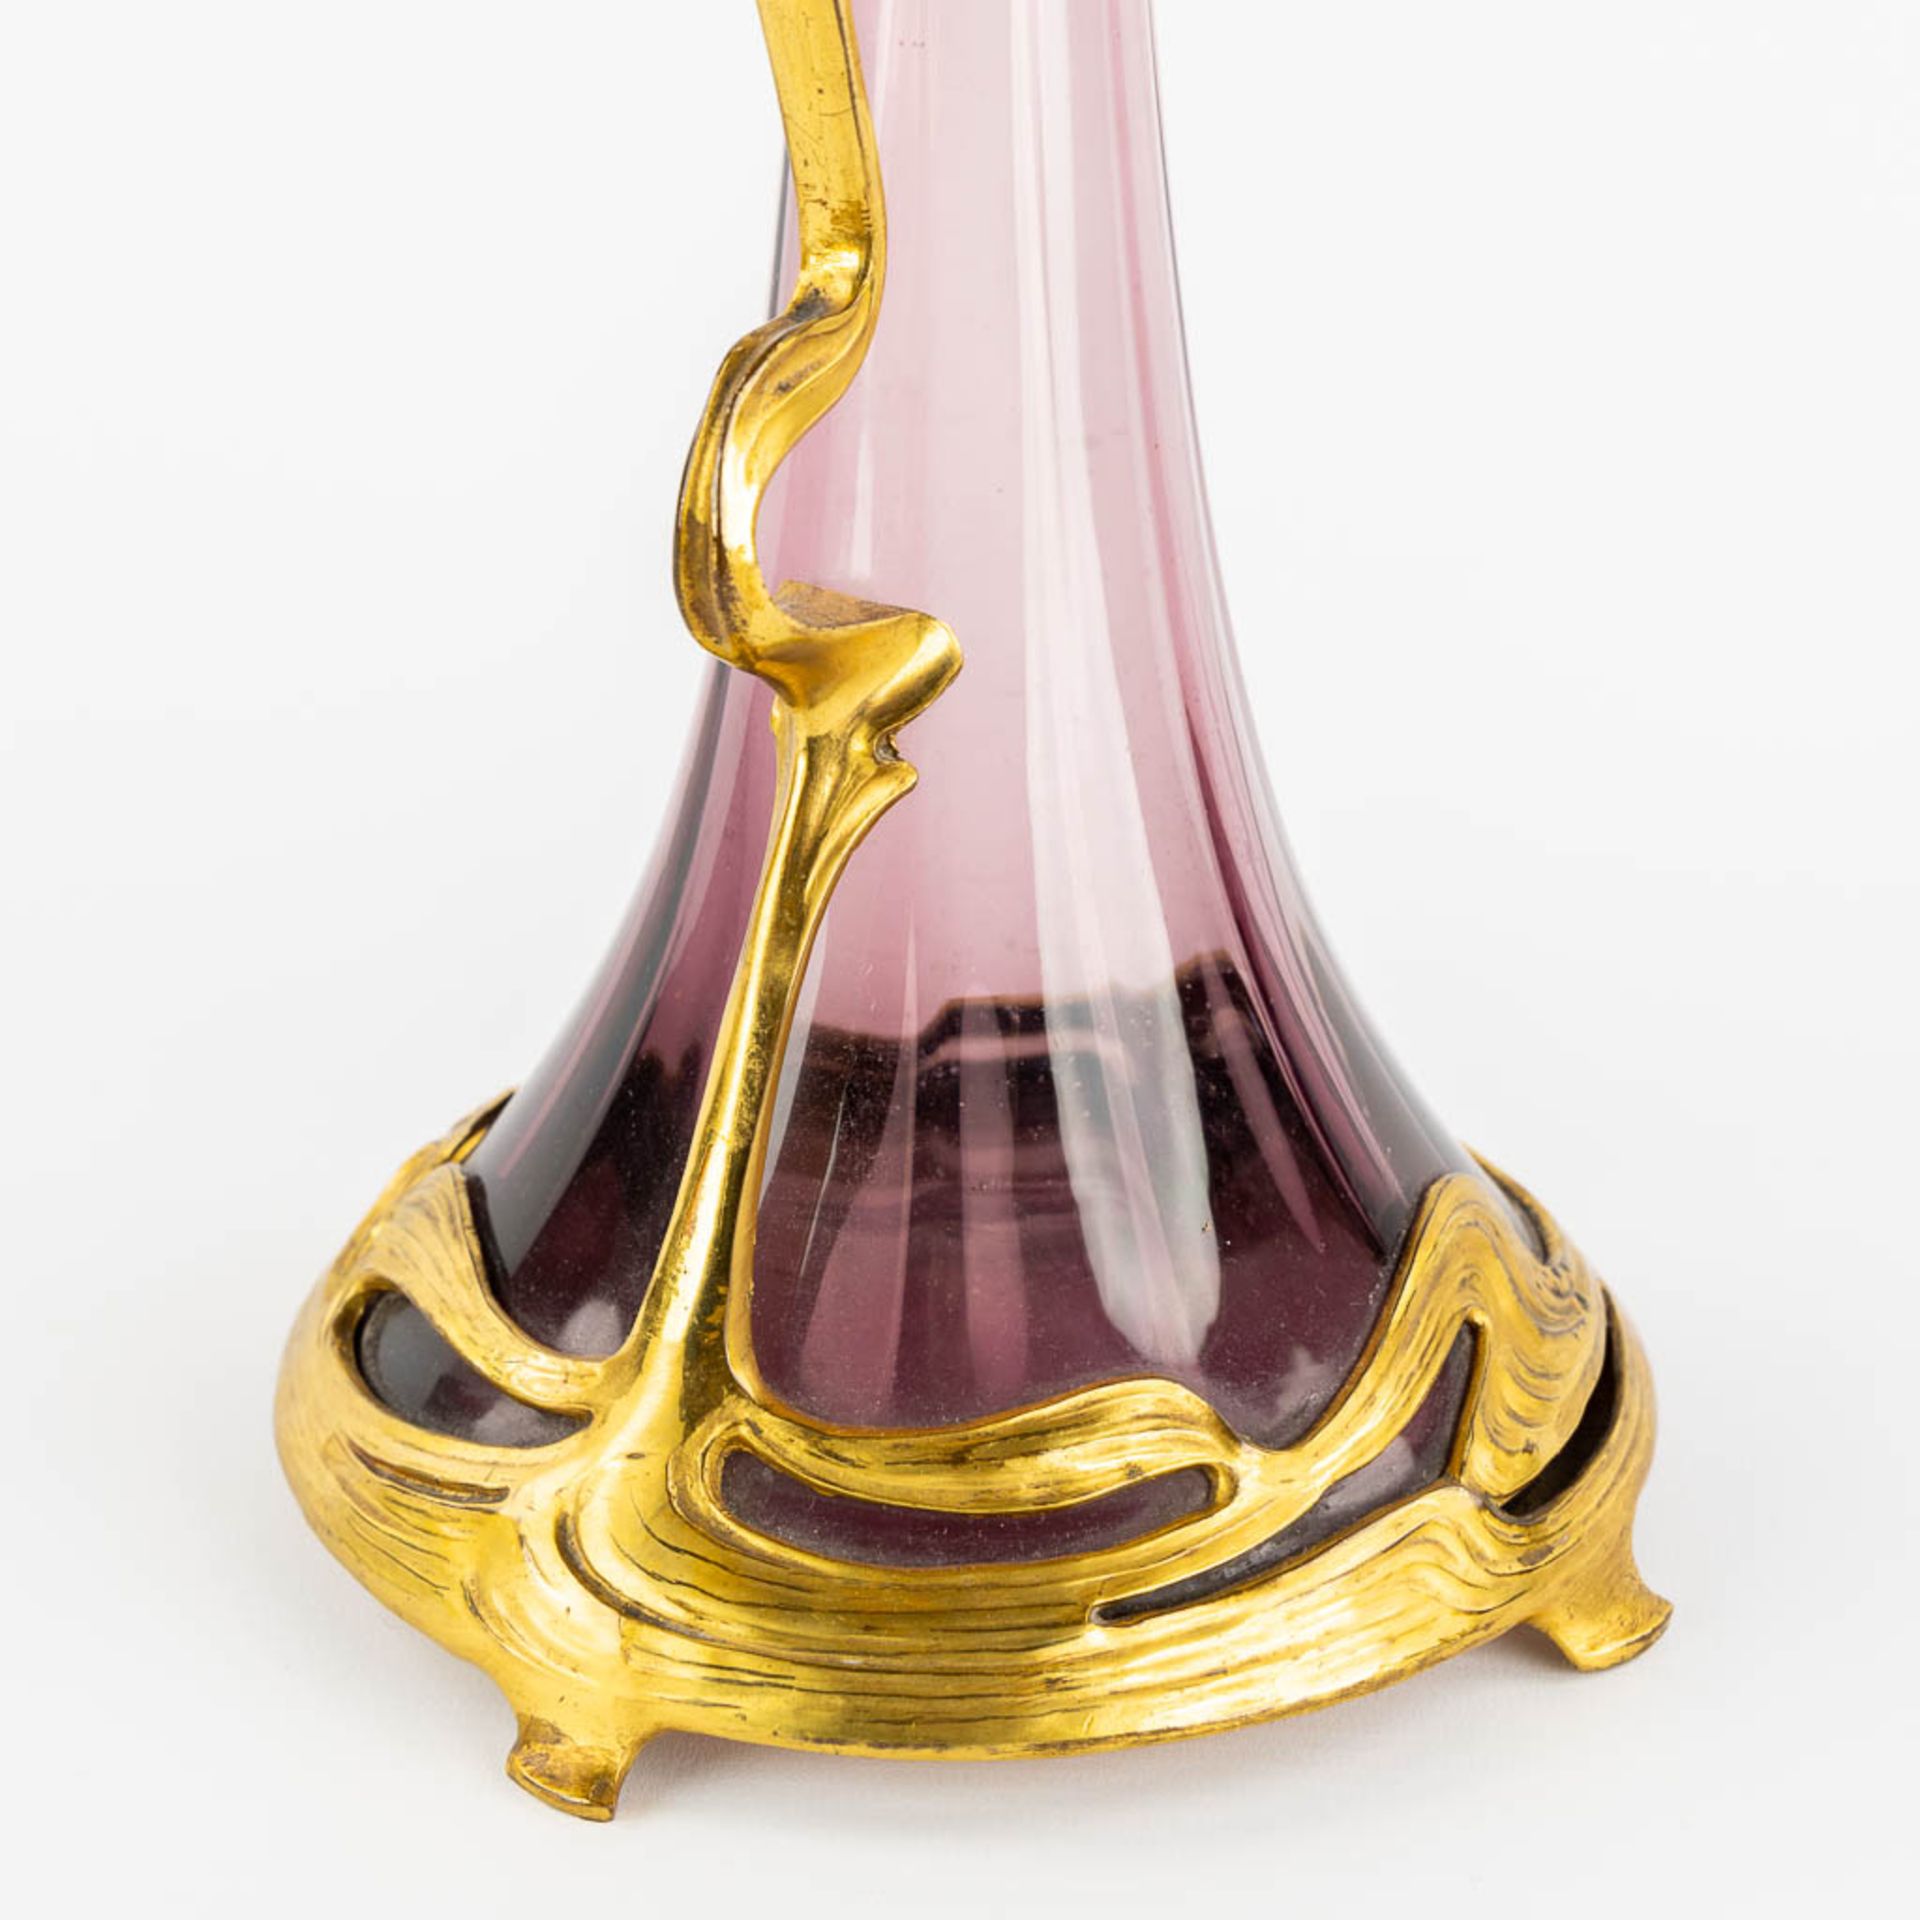 A pitcher, gilt metal and purple glass, Art Nouveau. (L:16 x W:20 x H:39 cm) - Image 11 of 11